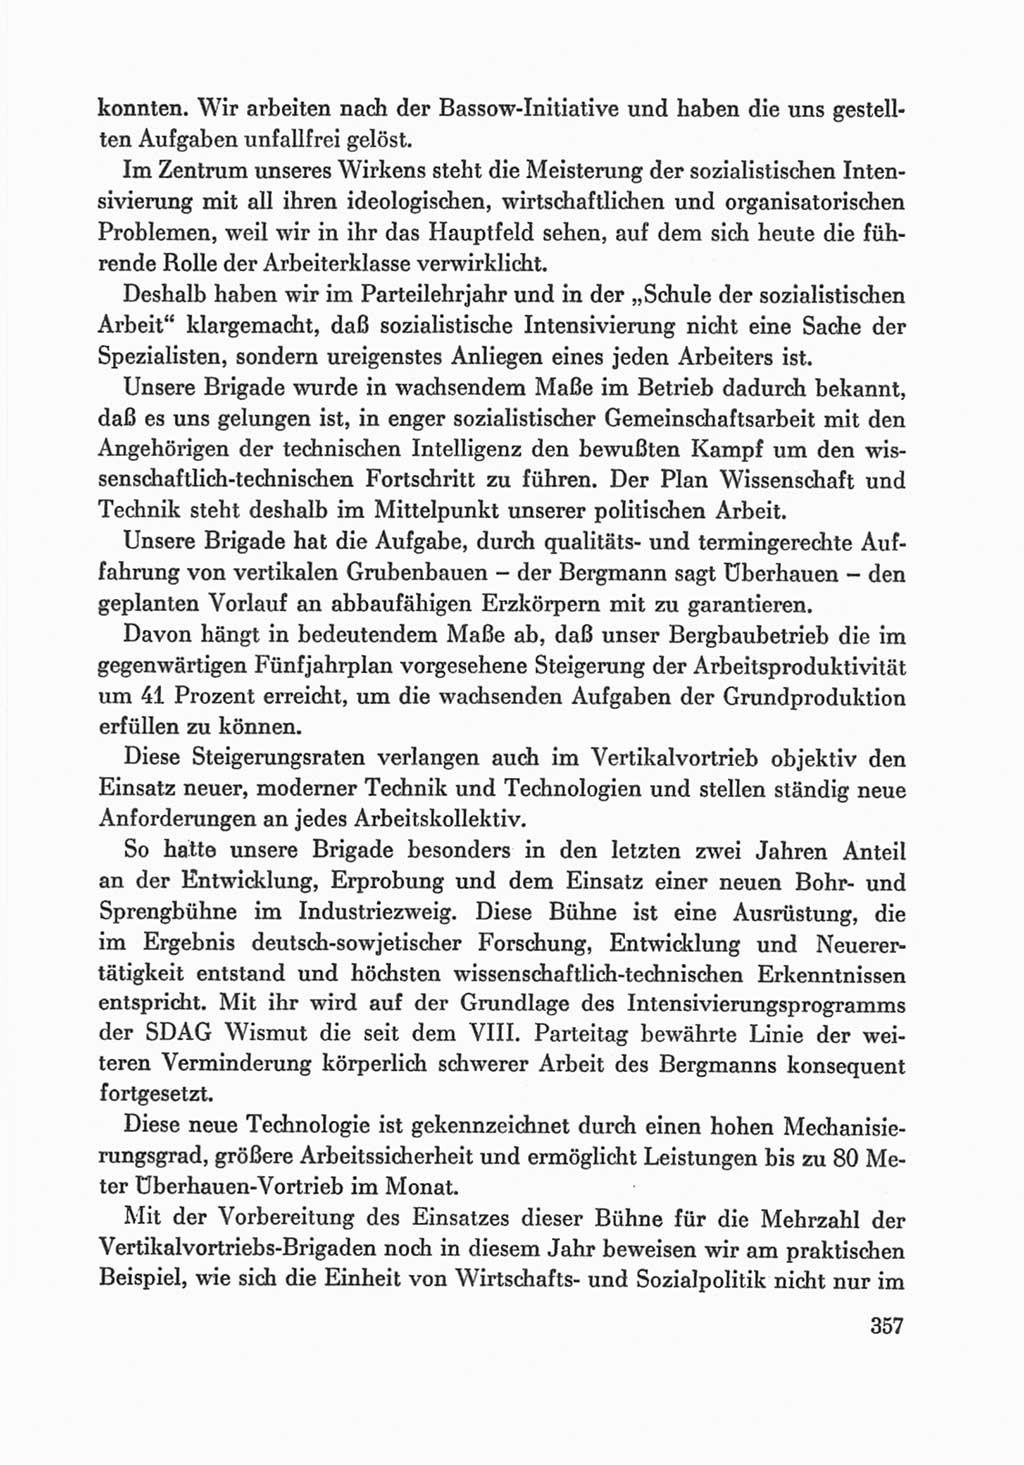 Protokoll der Verhandlungen des Ⅸ. Parteitages der Sozialistischen Einheitspartei Deutschlands (SED) [Deutsche Demokratische Republik (DDR)] 1976, Band 1, Seite 357 (Prot. Verh. Ⅸ. PT SED DDR 1976, Bd. 1, S. 357)